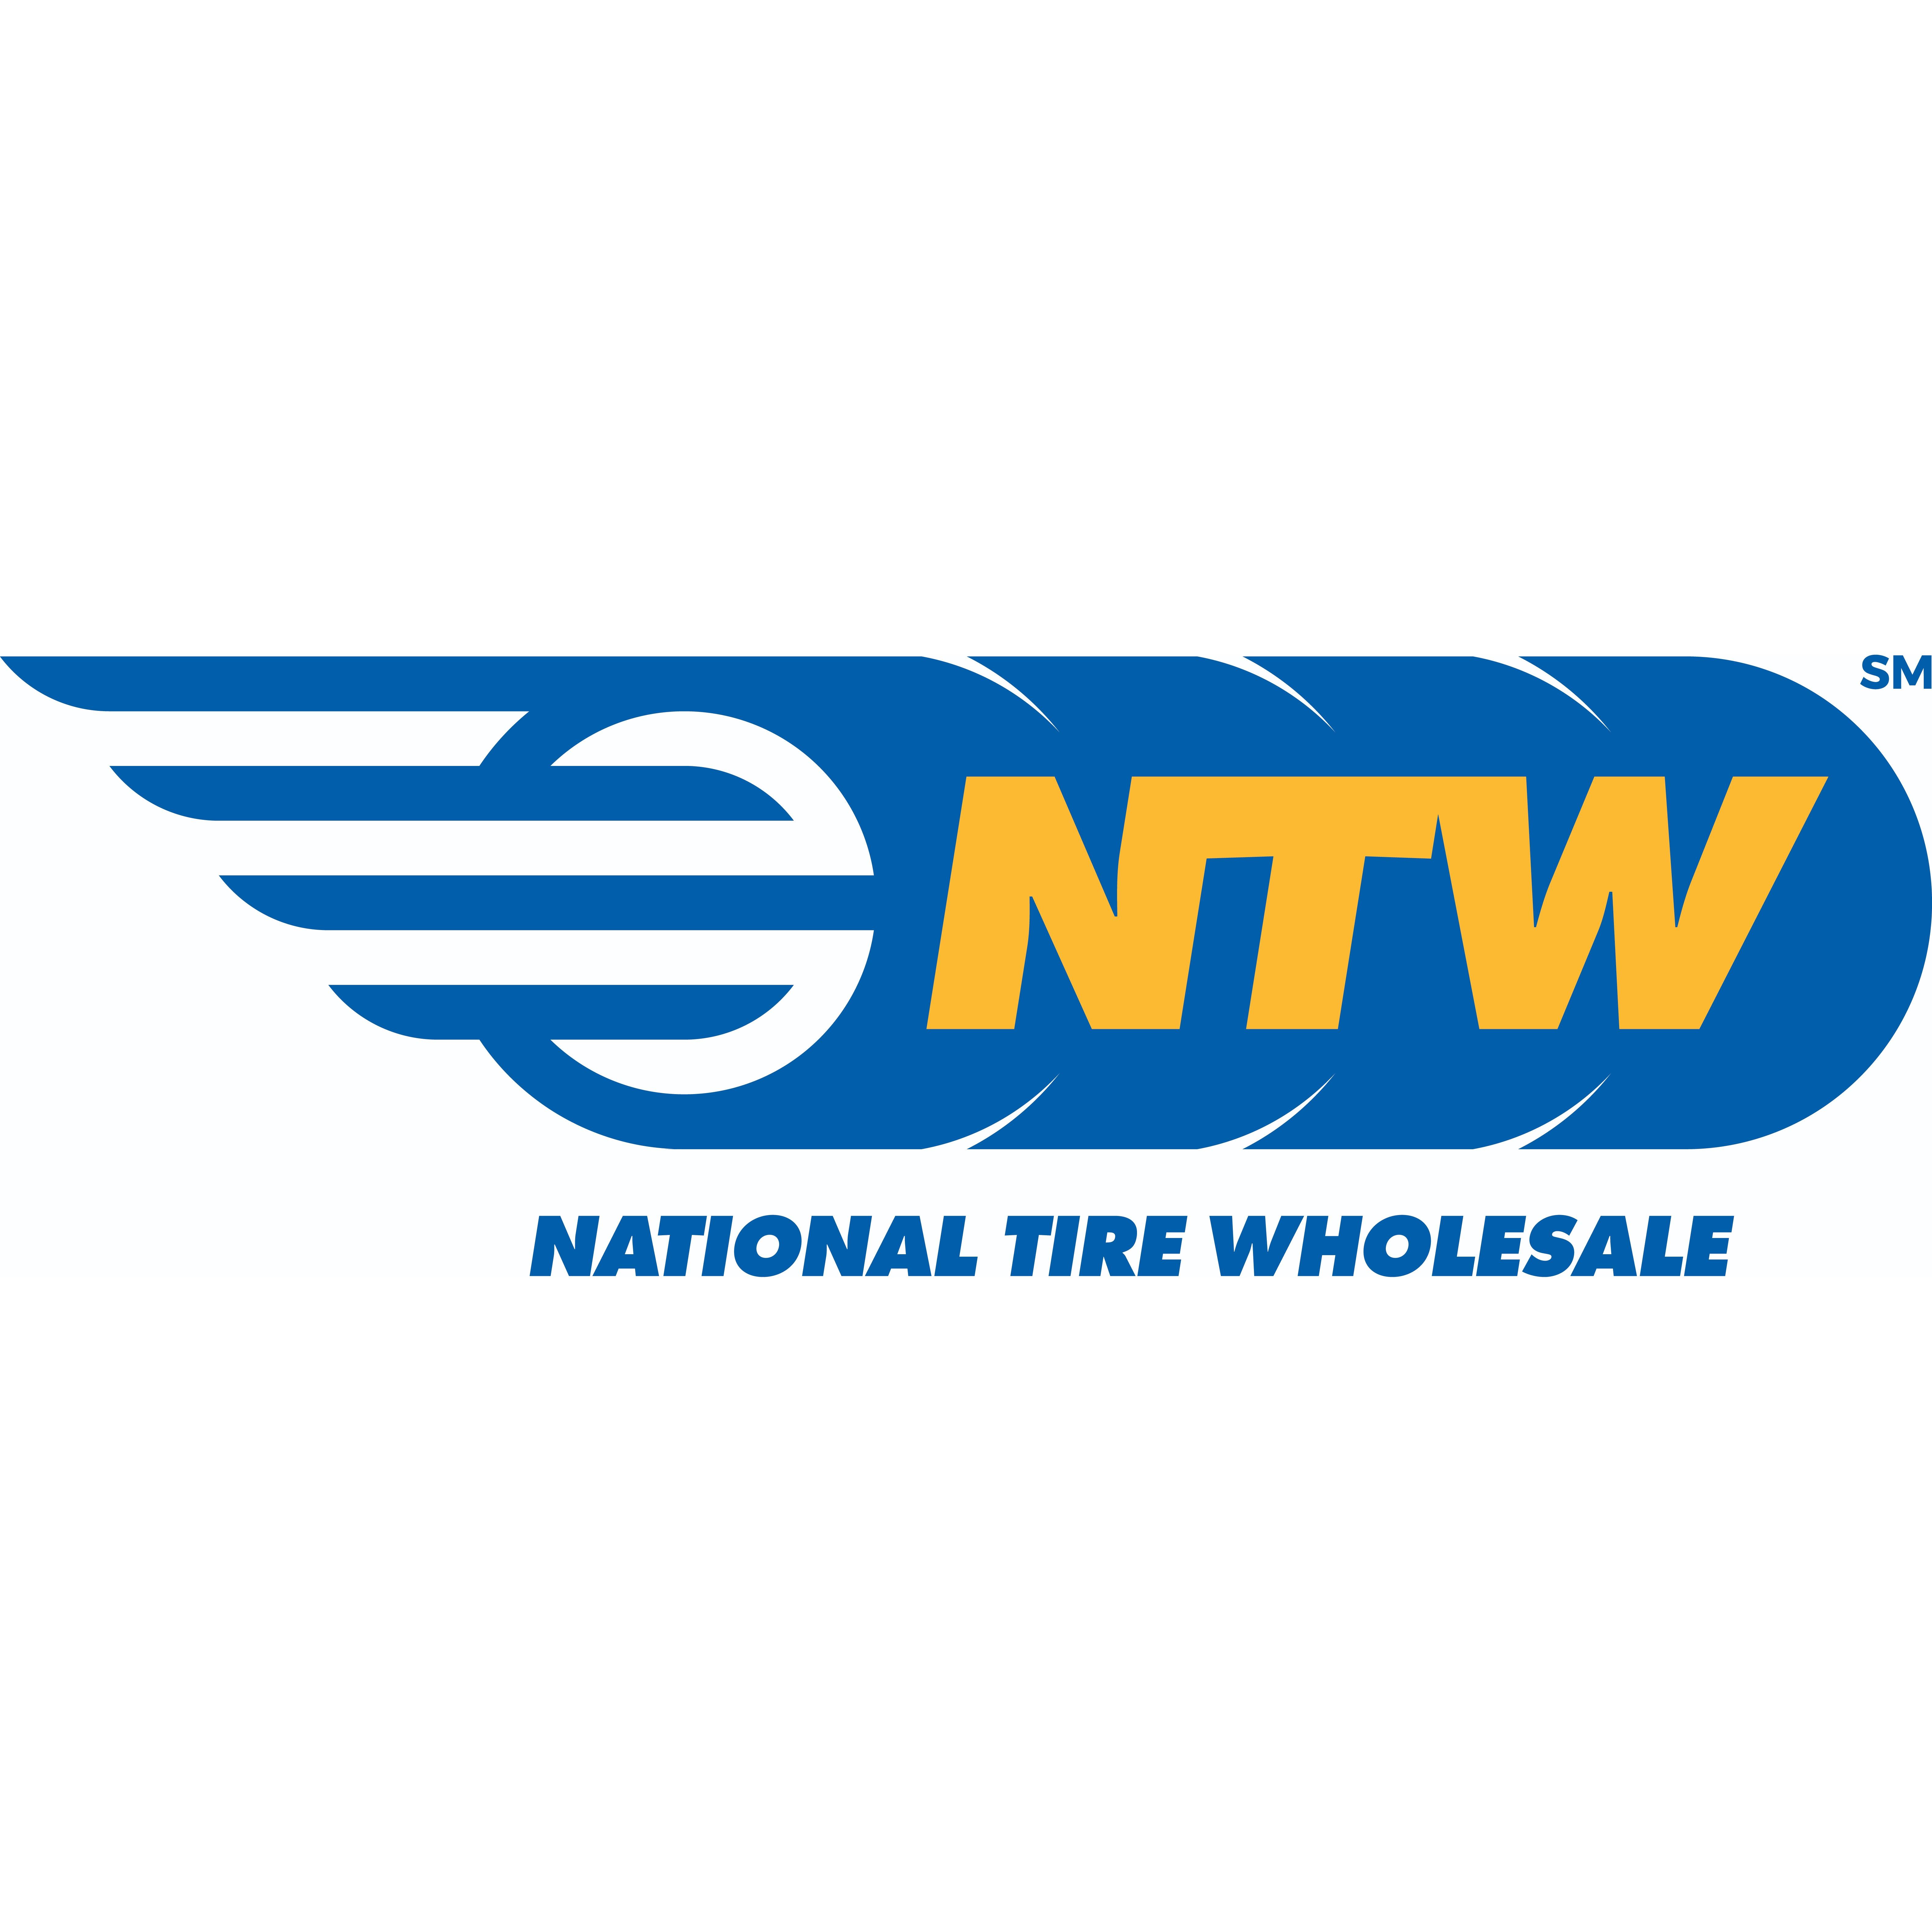 NTW - National Tire Wholesale - Fresno, CA 93706 - (800)559-4897 | ShowMeLocal.com